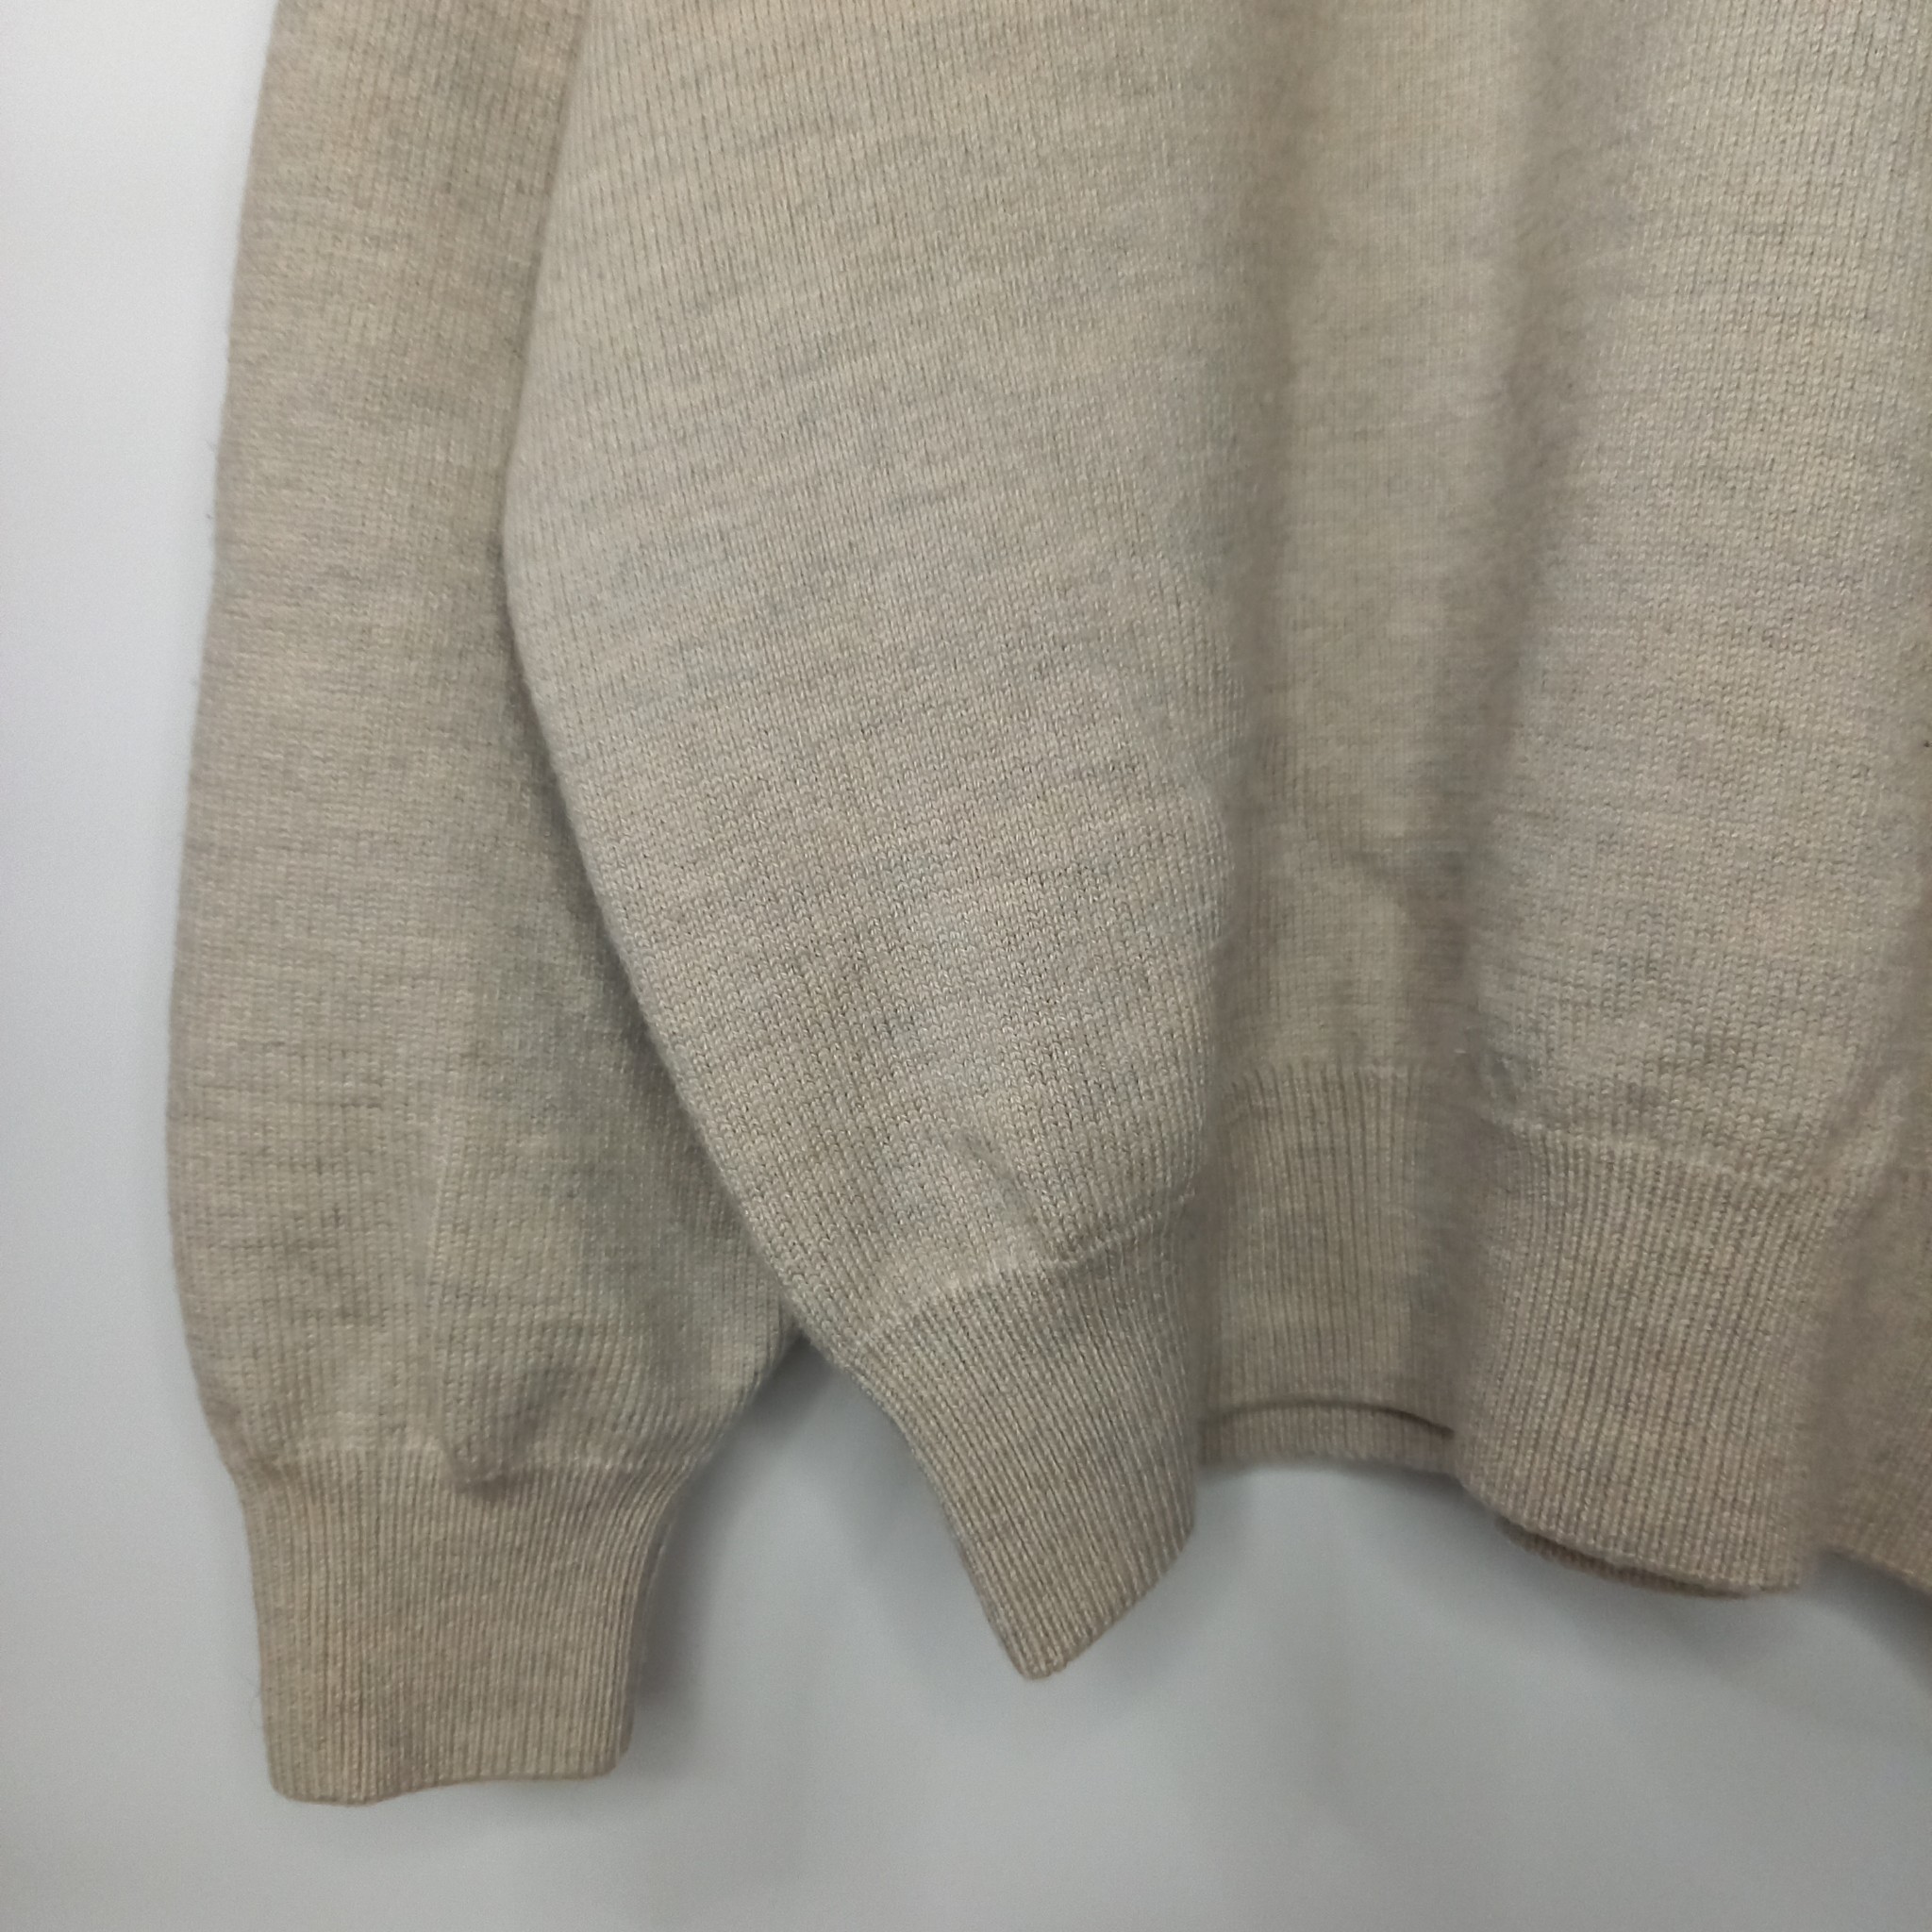 68-2790s　ポロゴルフ　ラルフローレン　メリノニット　セーター　刺繍　ベージュ　L